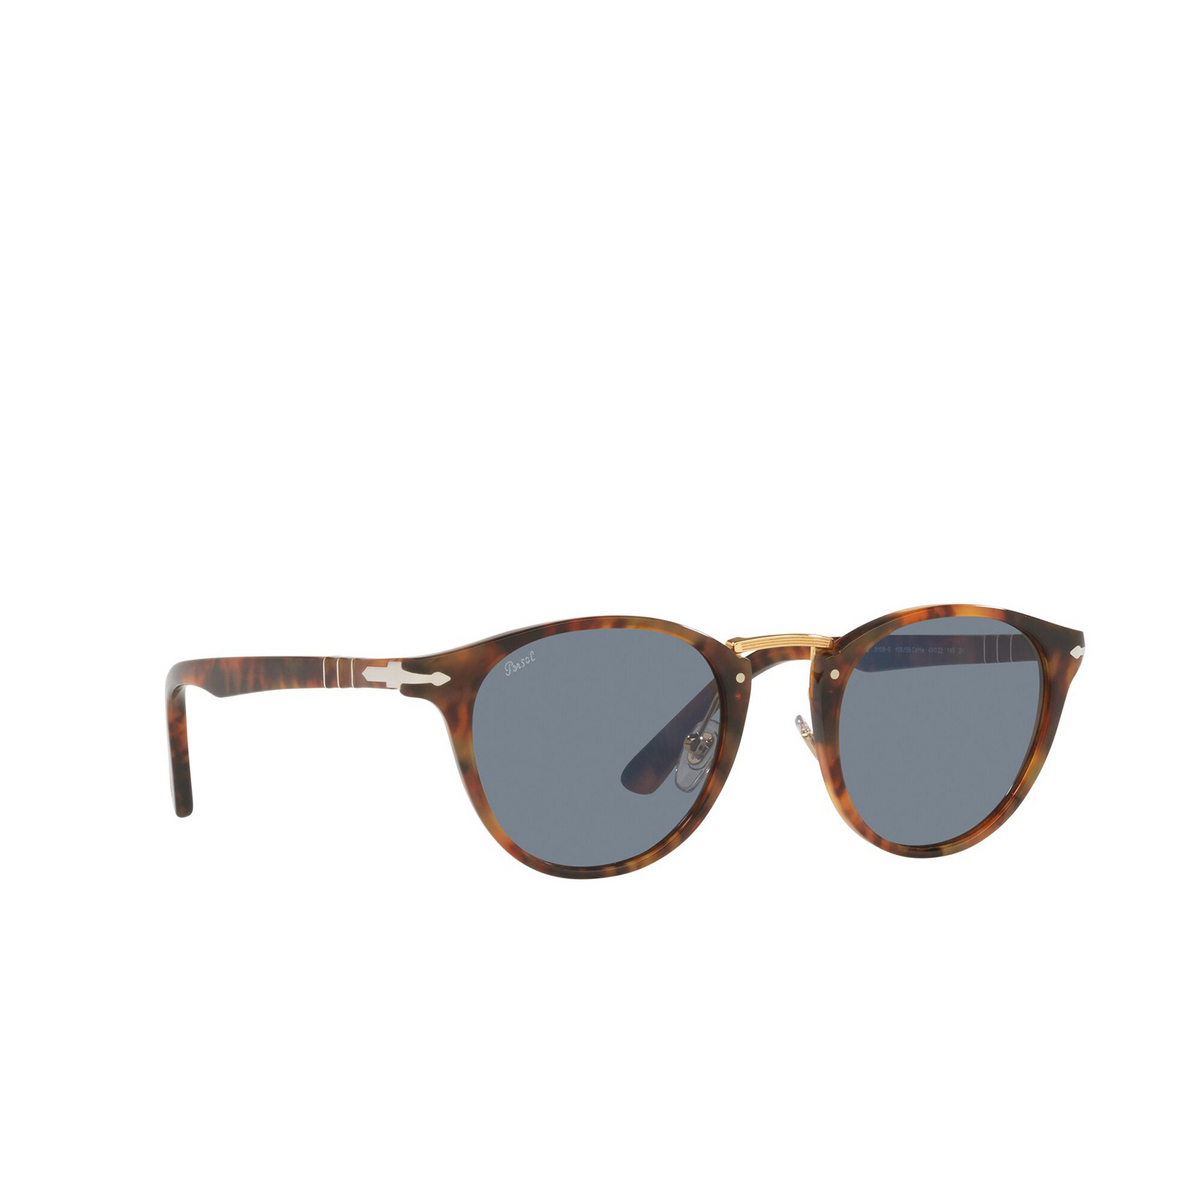 Persol® Round Sunglasses: PO3108S color Caffe 108/56 - three-quarters view.